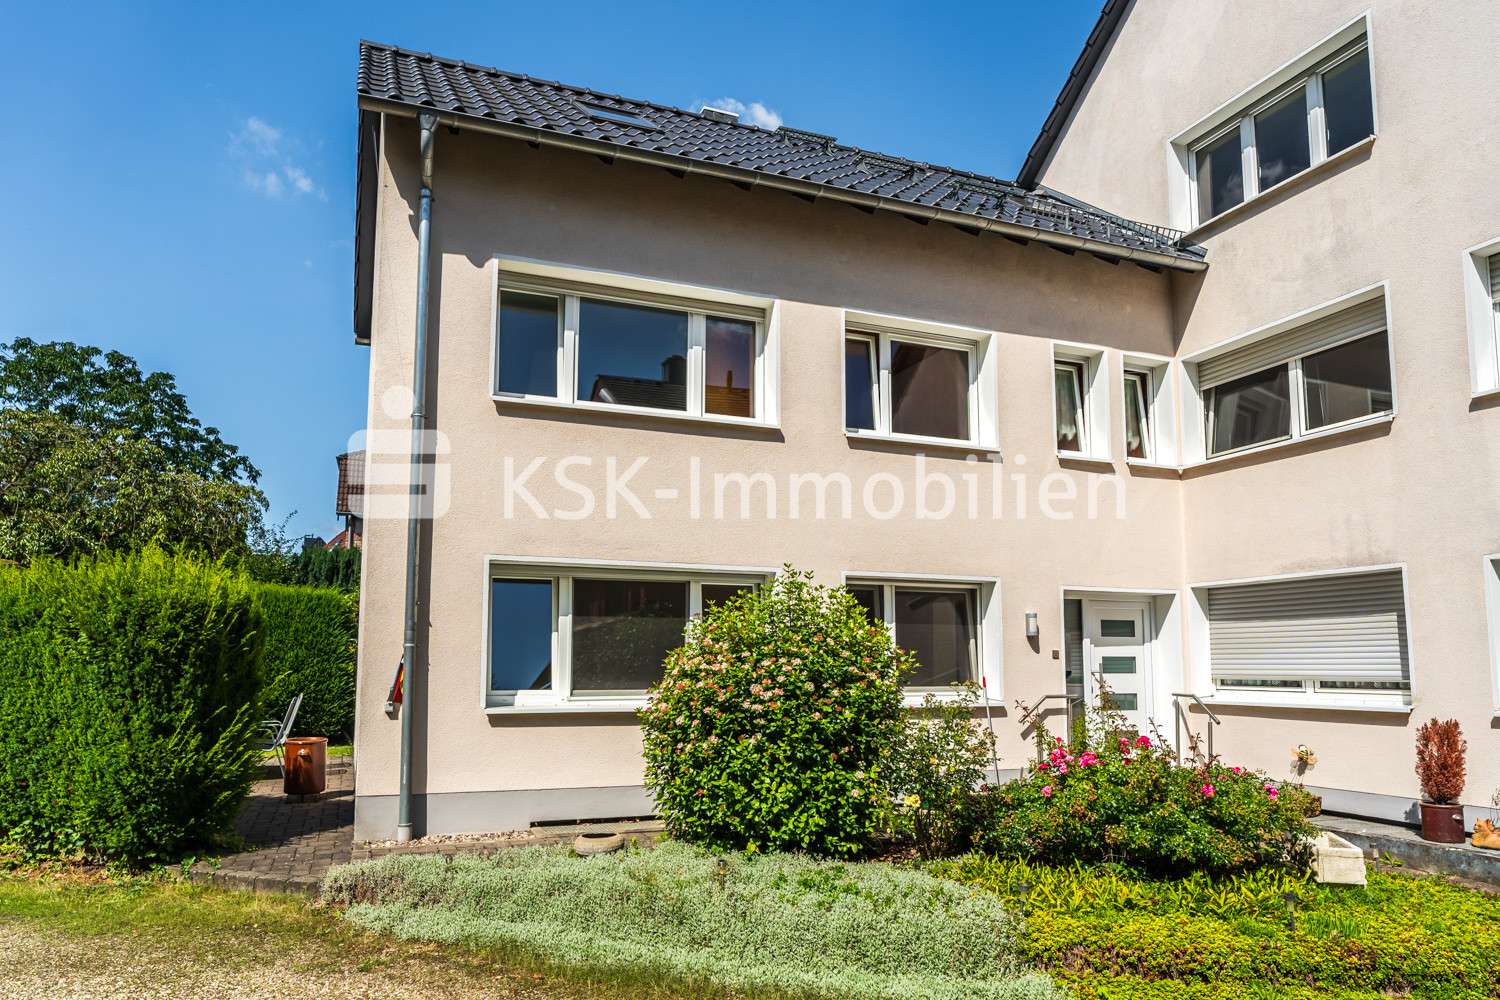 114101 Außenansicht  - Etagenwohnung in 53121 Bonn mit 61m² kaufen